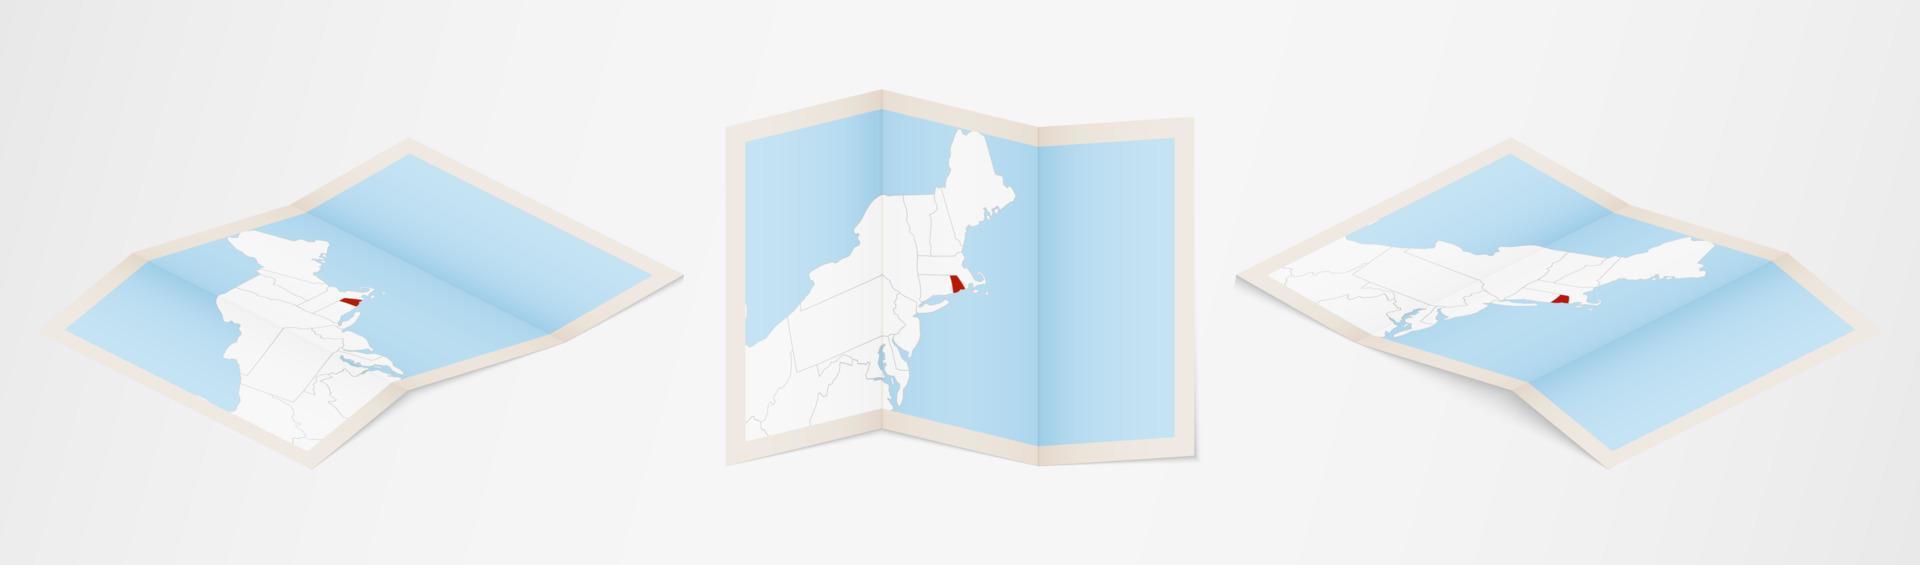 Faltkarte von Rhode Island in drei verschiedenen Versionen. vektor